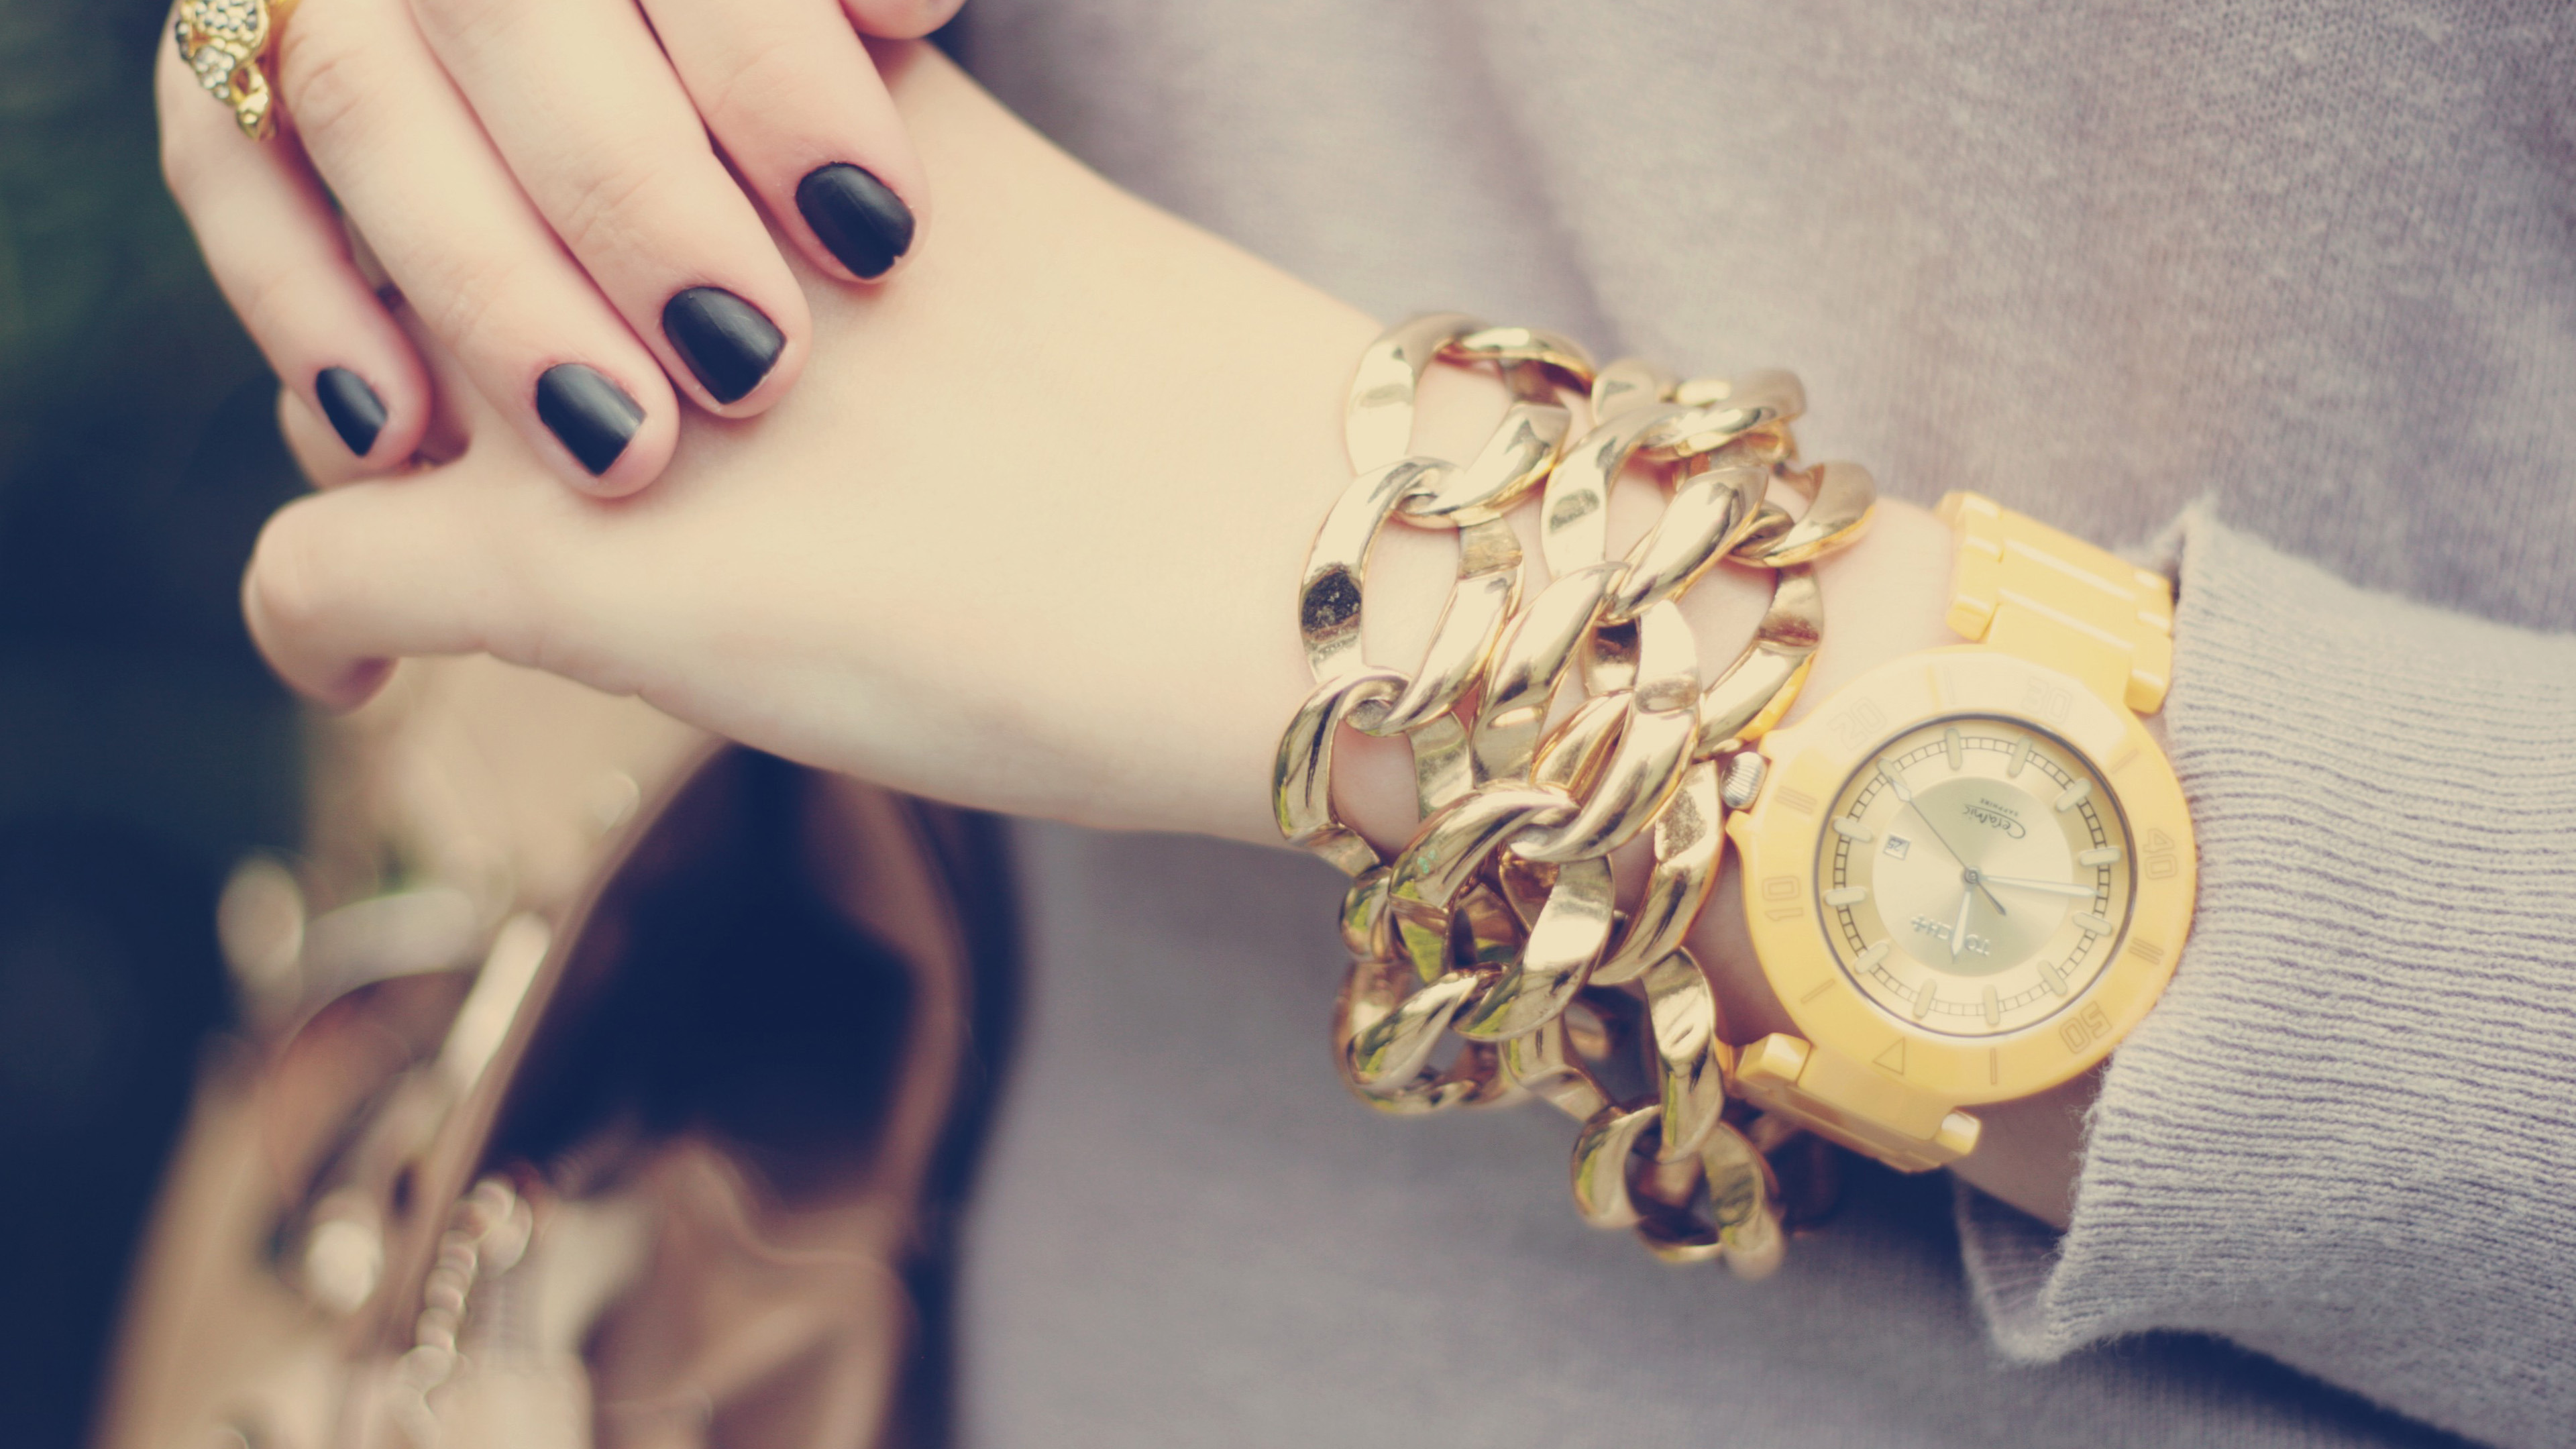 Красивые часы на руки. Бижутерия. Бижутерия часы. Часы браслет. Стильная бижутерия на руках.